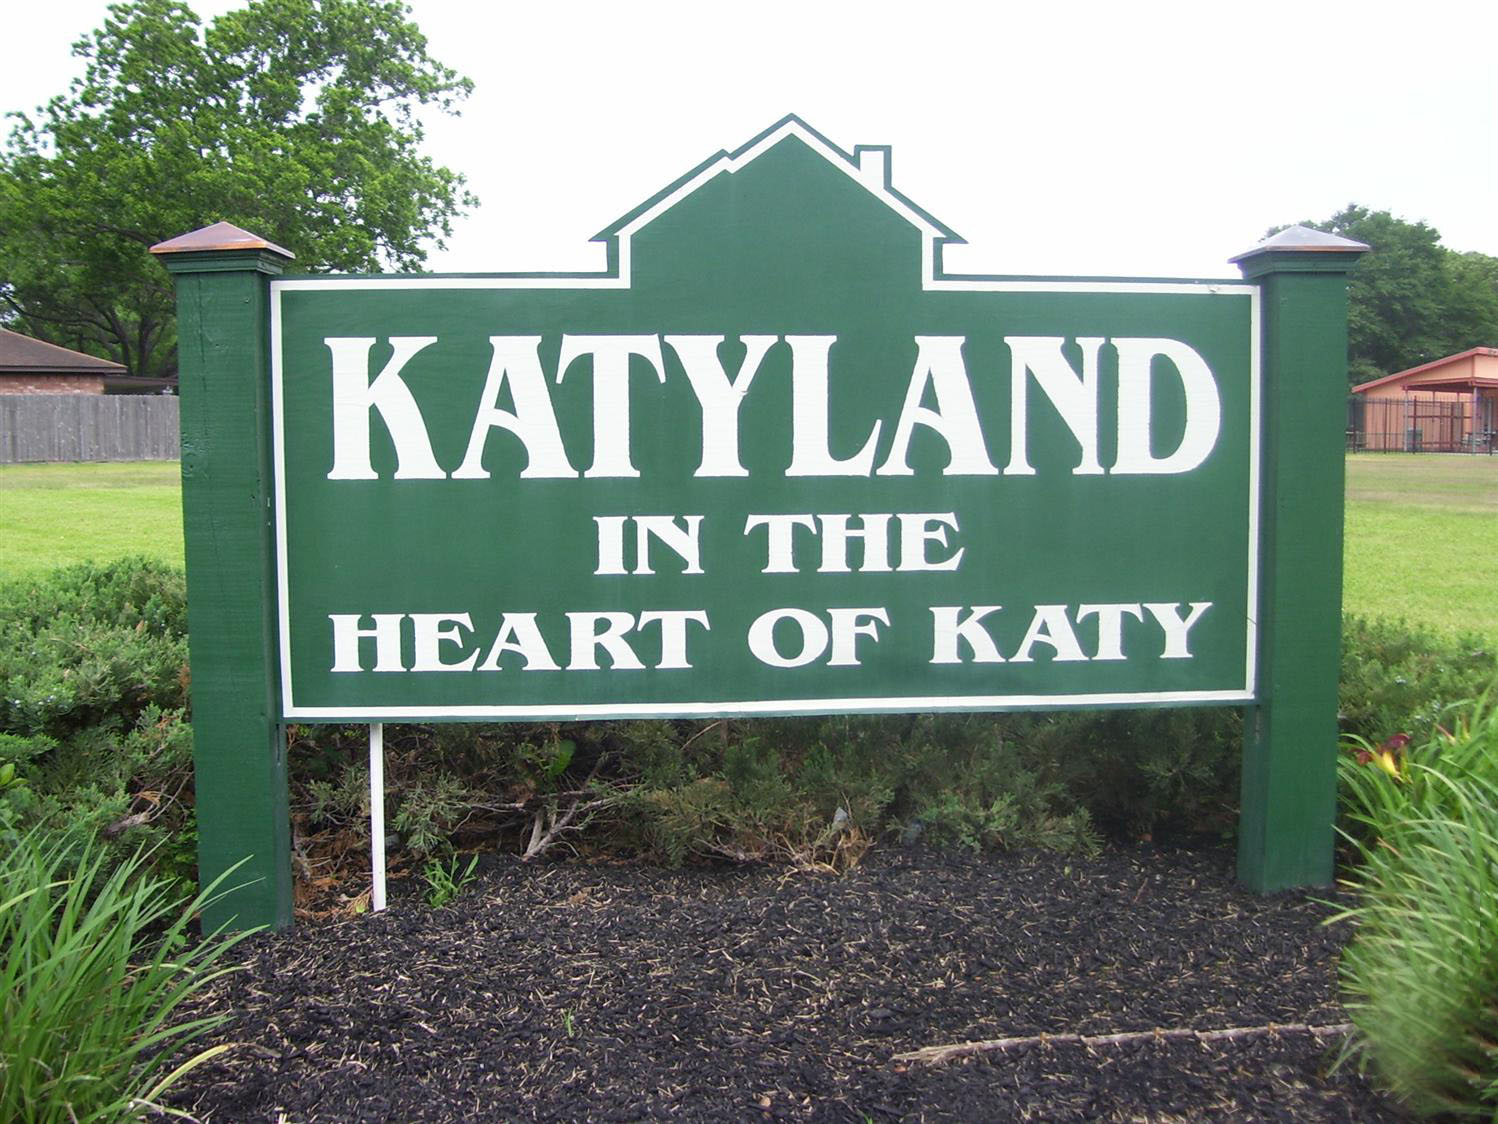 "Katyland